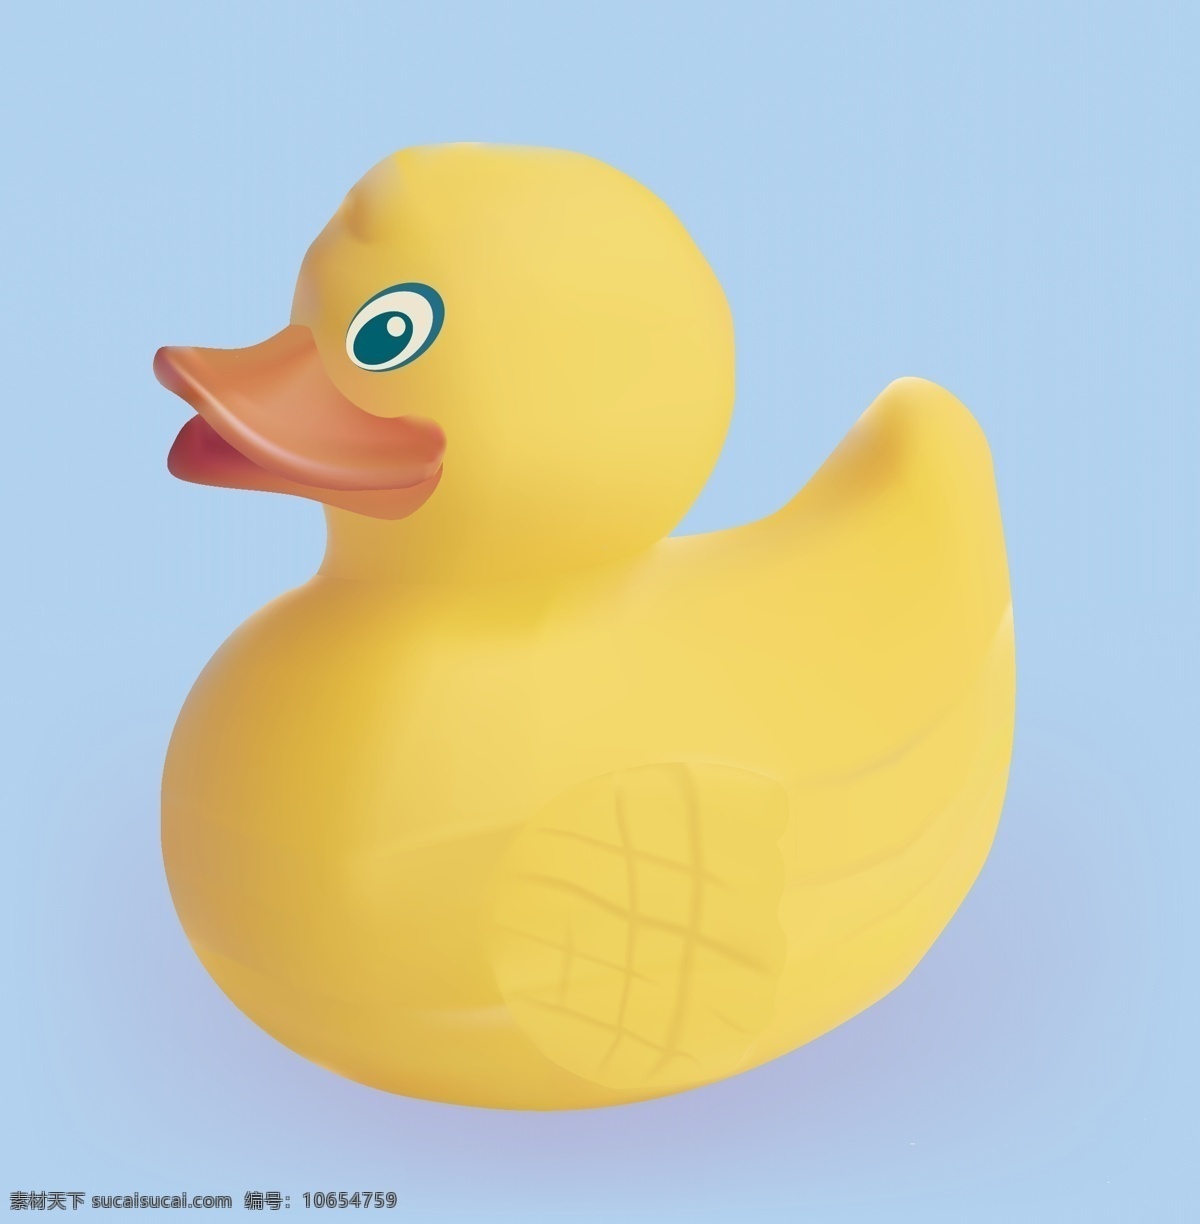 玩具 塑料 鸭 黄色 可爱 生活百科 生活用品 鸭子 矢量 模板下载 玩具塑料鸭 psd源文件